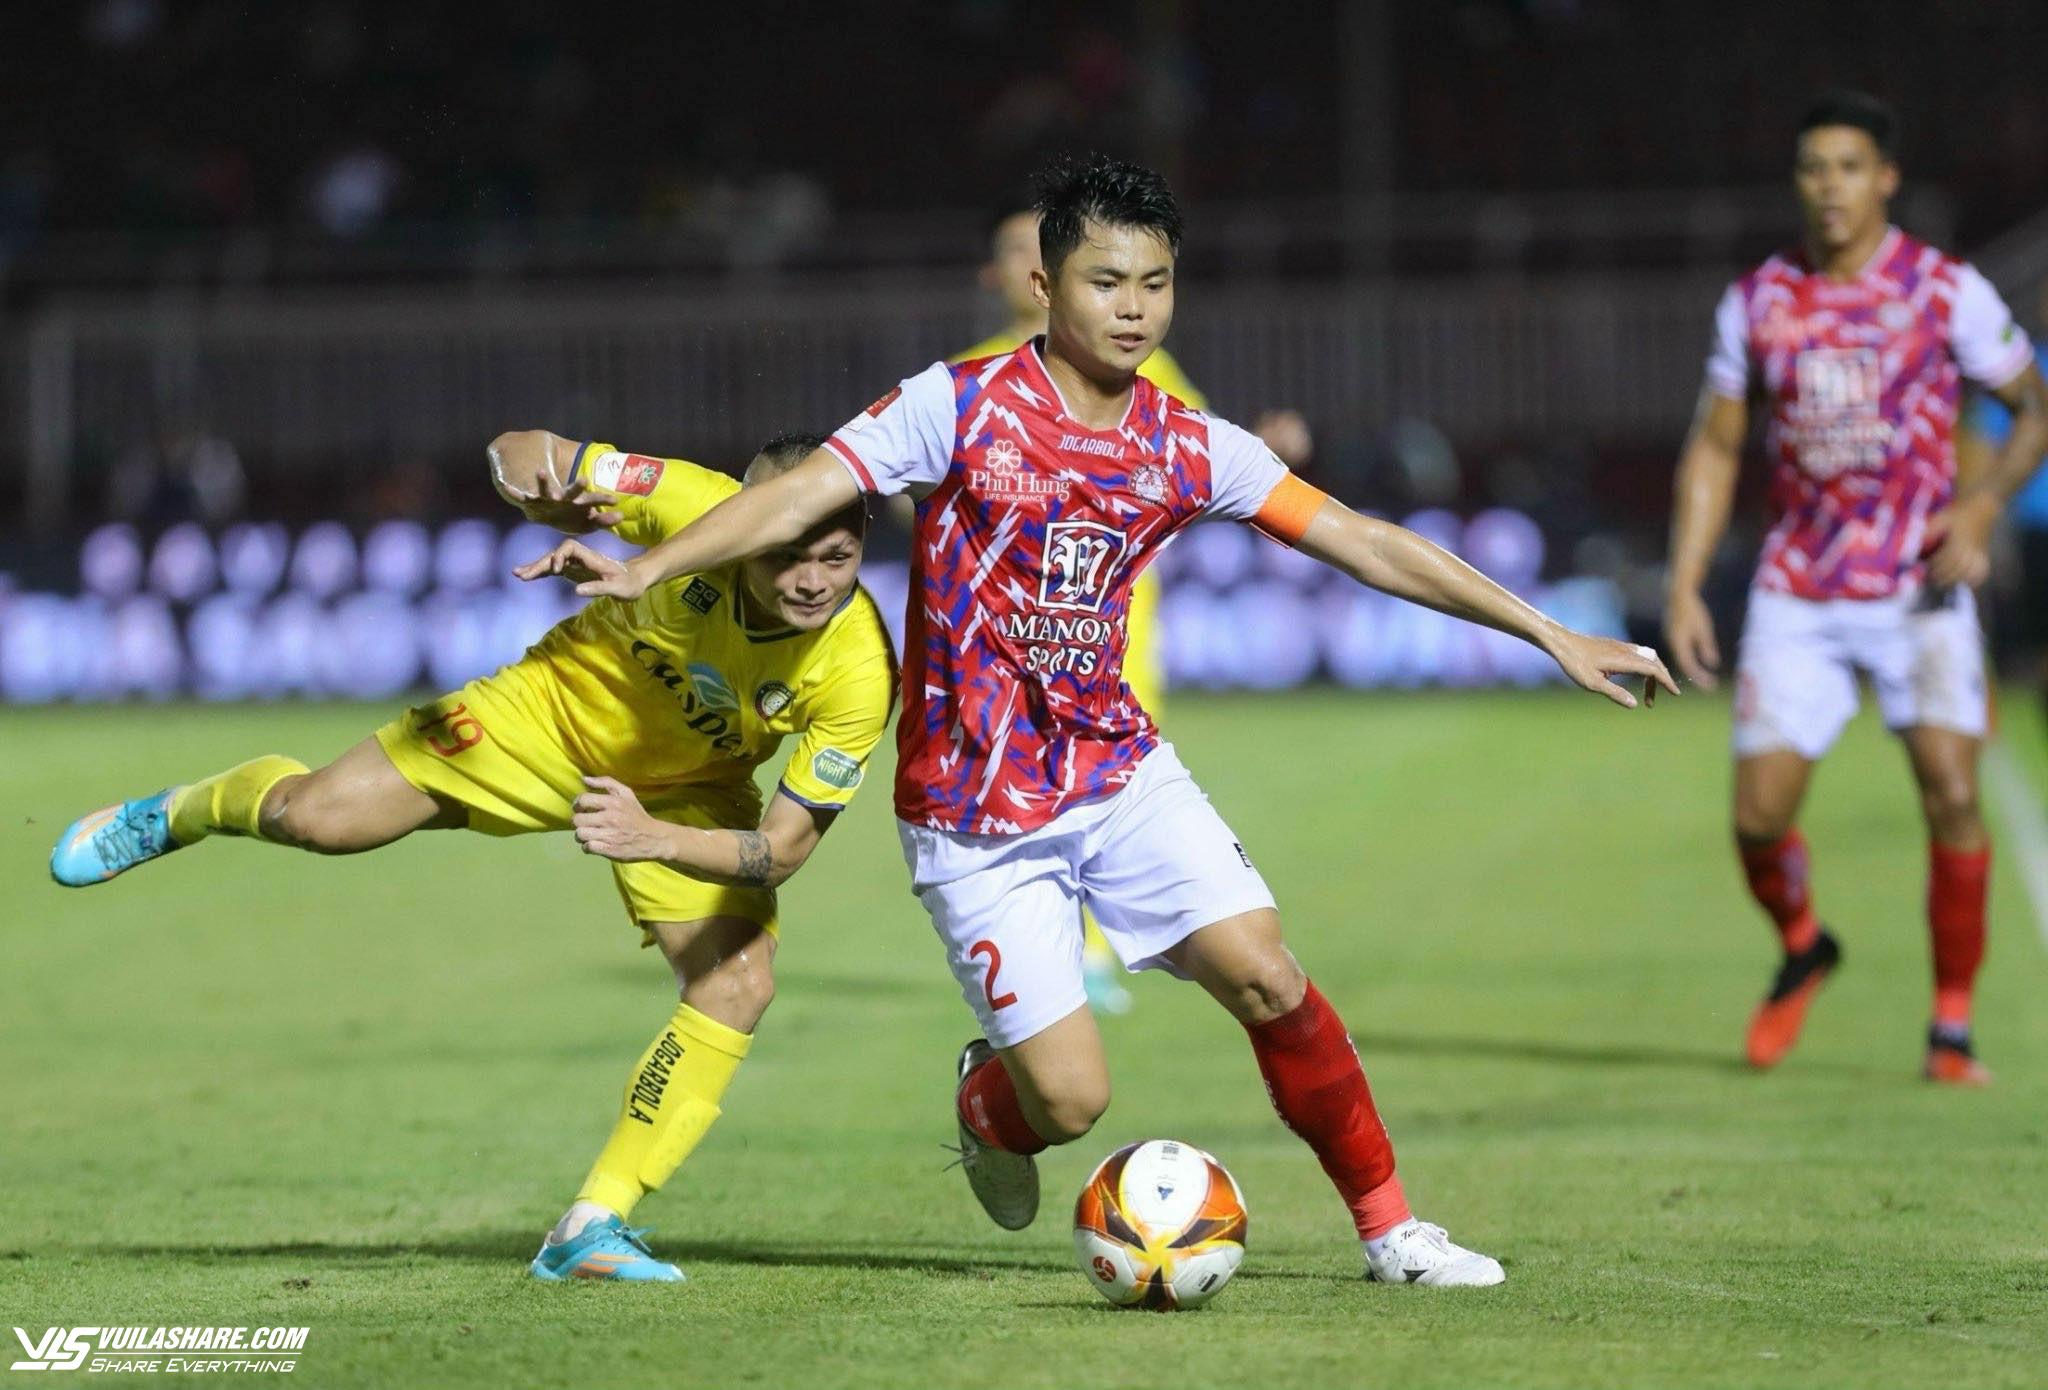 Trước khi hạ màn, V-League giới thiệu những nhân tố mới nào cho đội tuyển Việt Nam?- Ảnh 2.